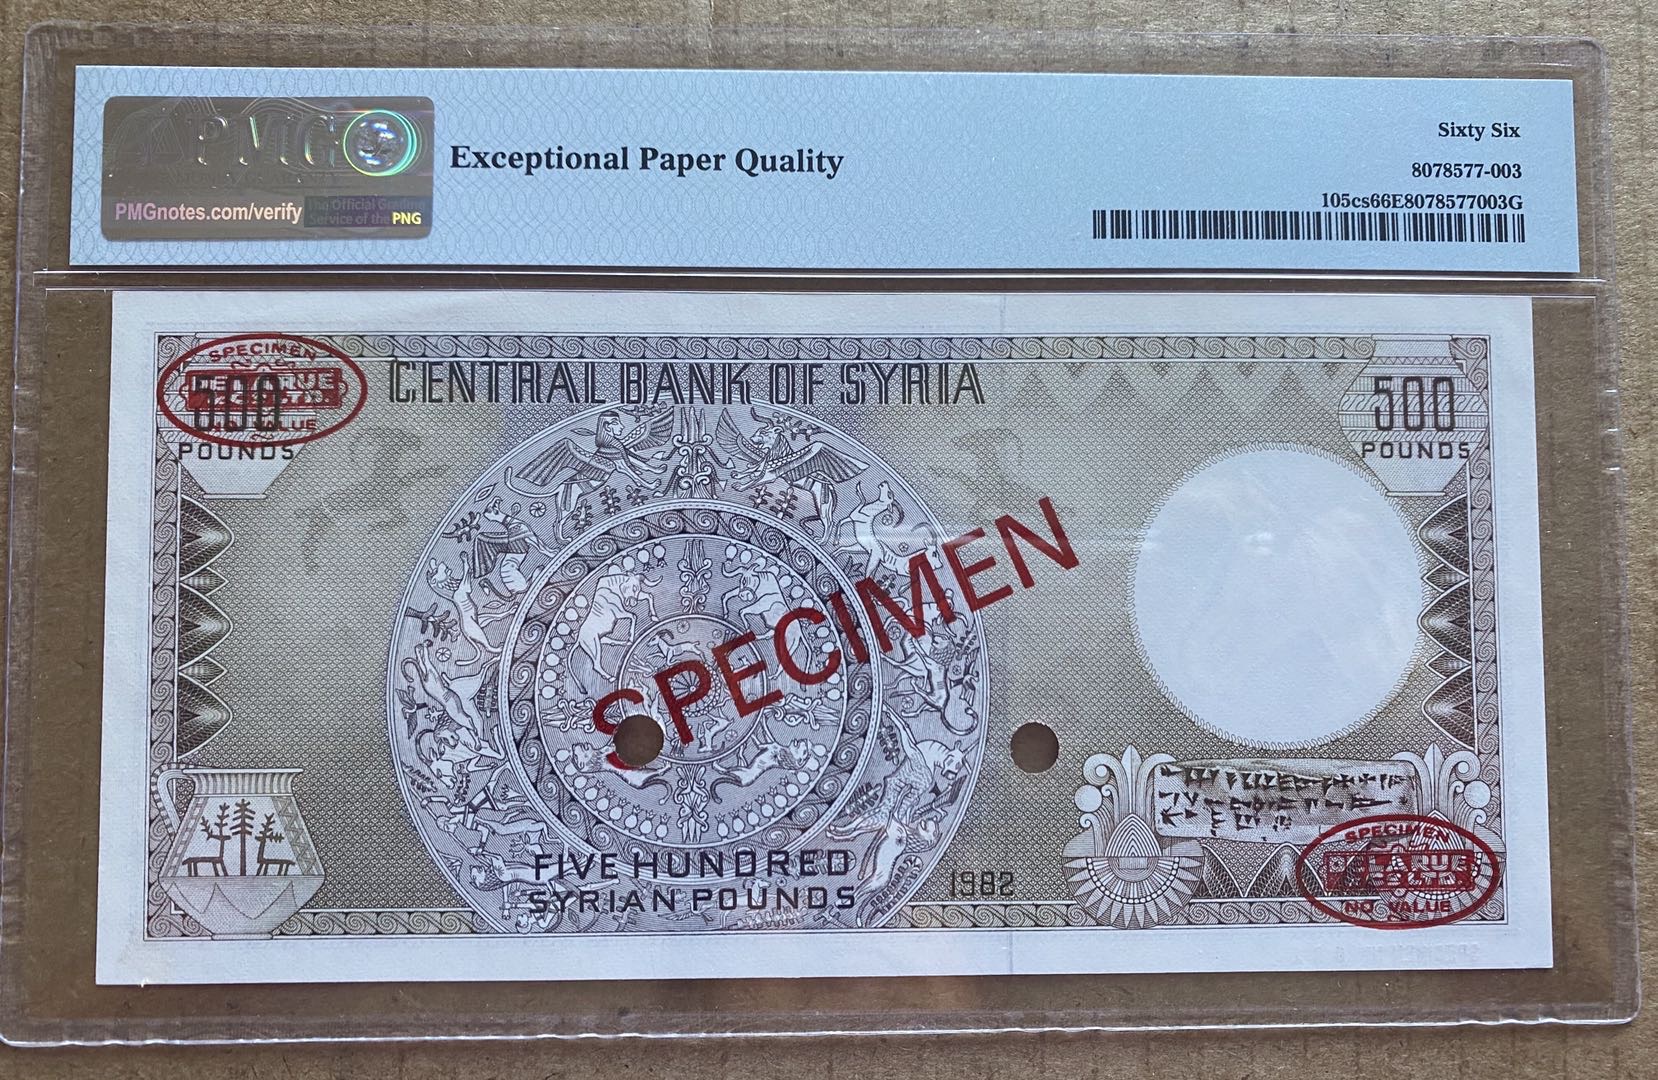 1402 AH 1982 Syria 500 Pounds Specimen Banknote P105sc PMG 66 Gem UNC